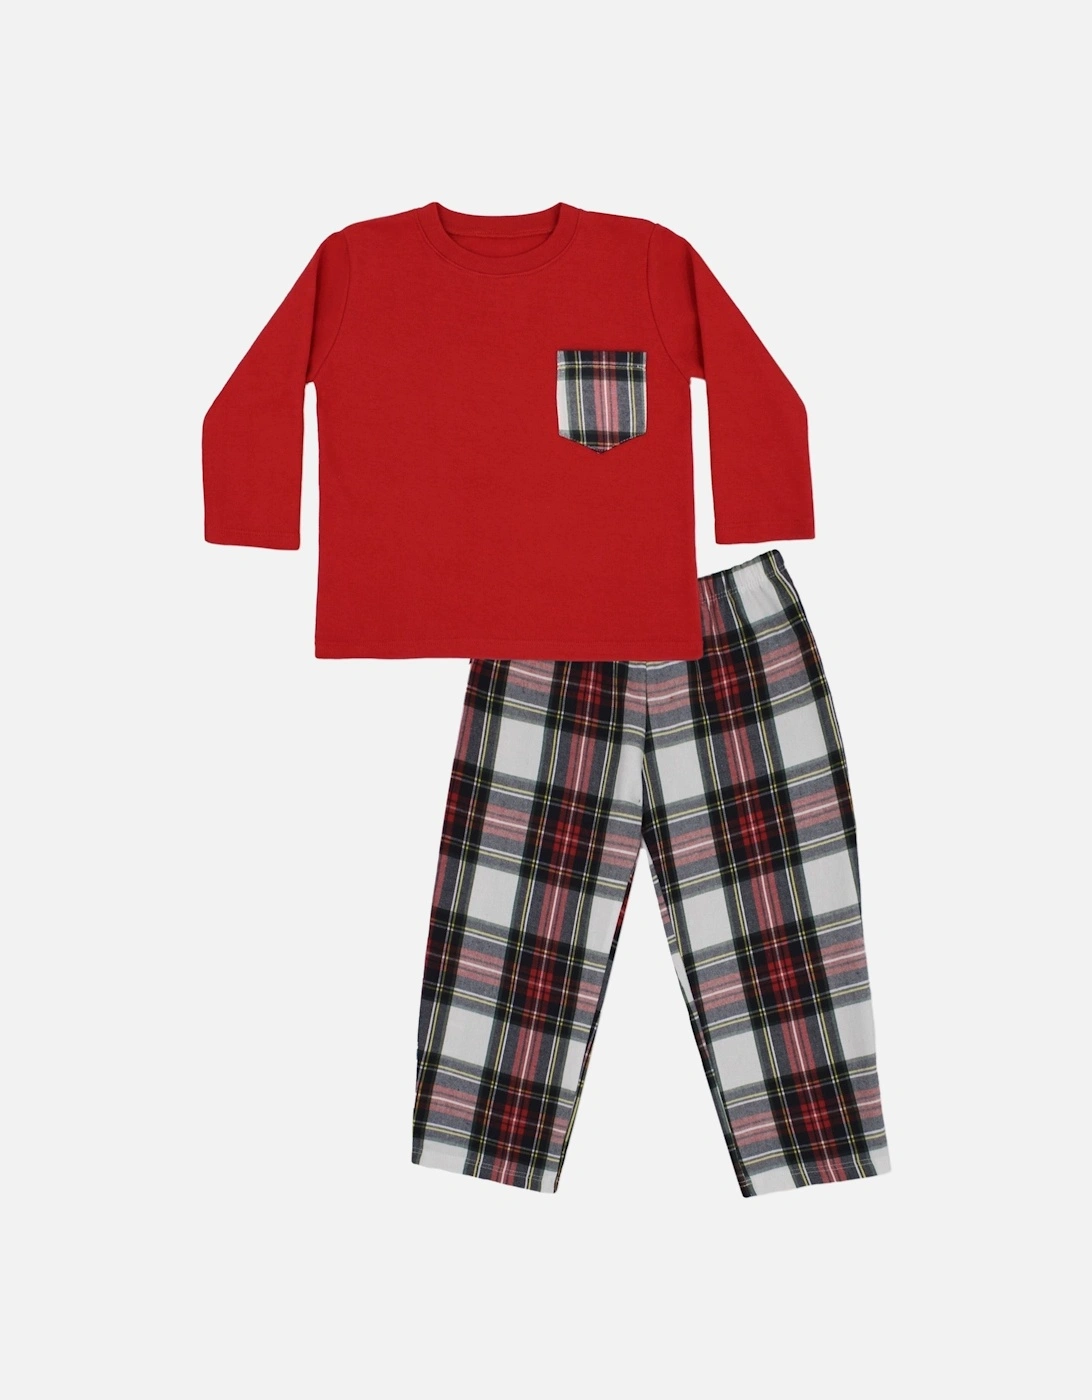 Red Tartan Cotton Pyjamas, 2 of 1